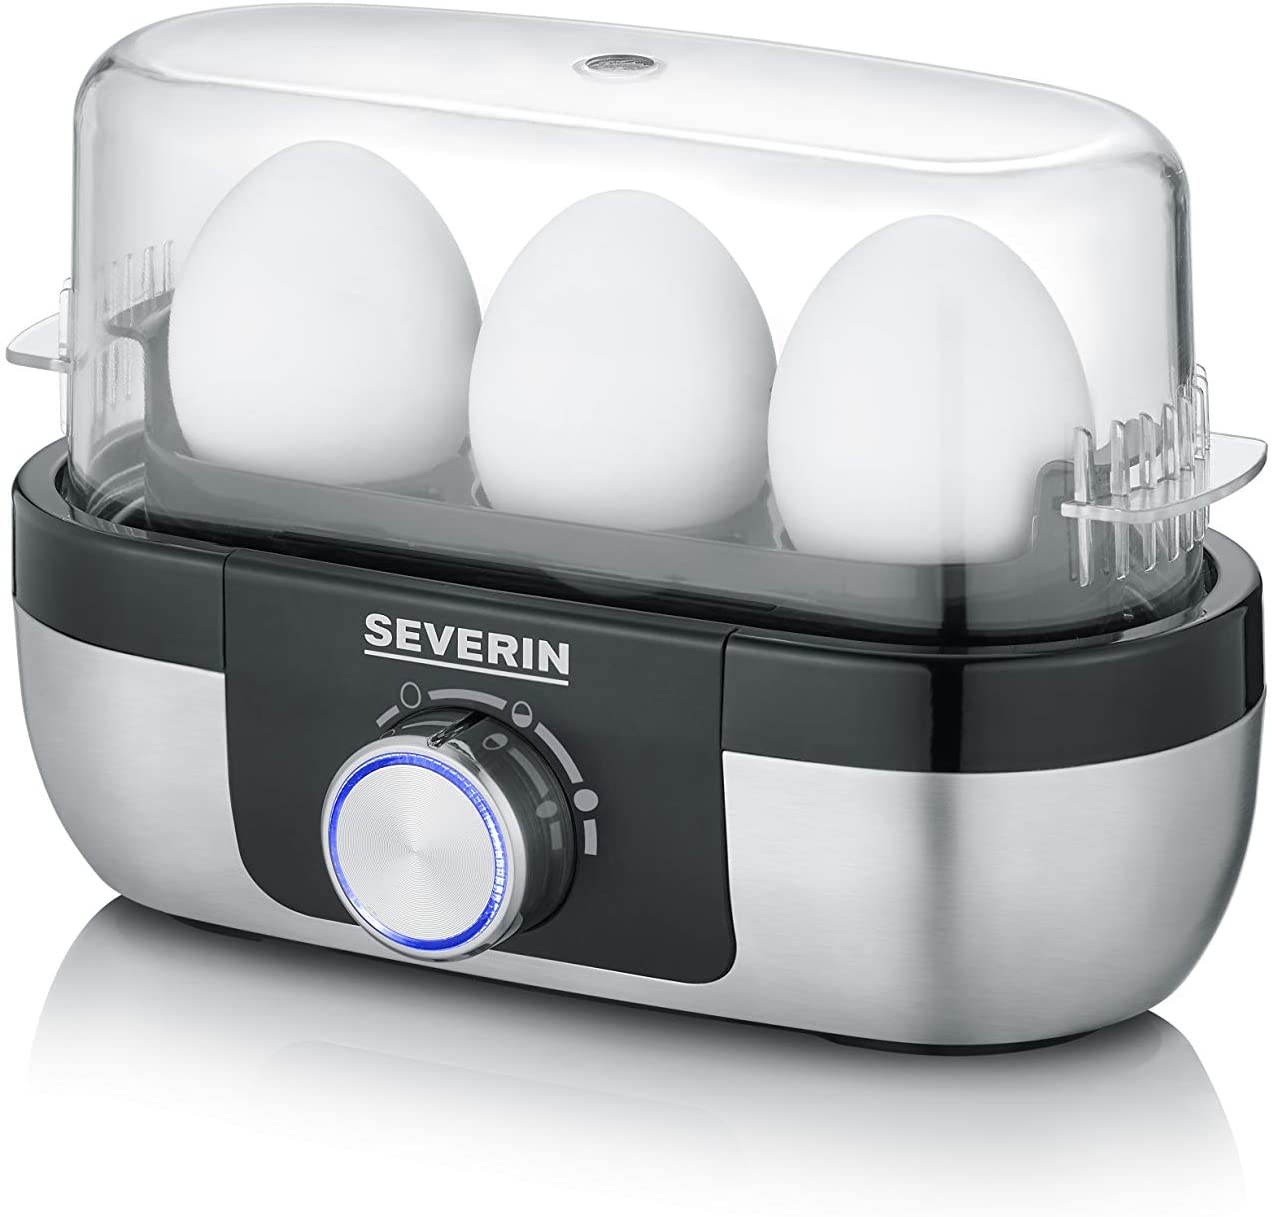 Severin Italia Ek 3163 Egg Boiler With Timer Control